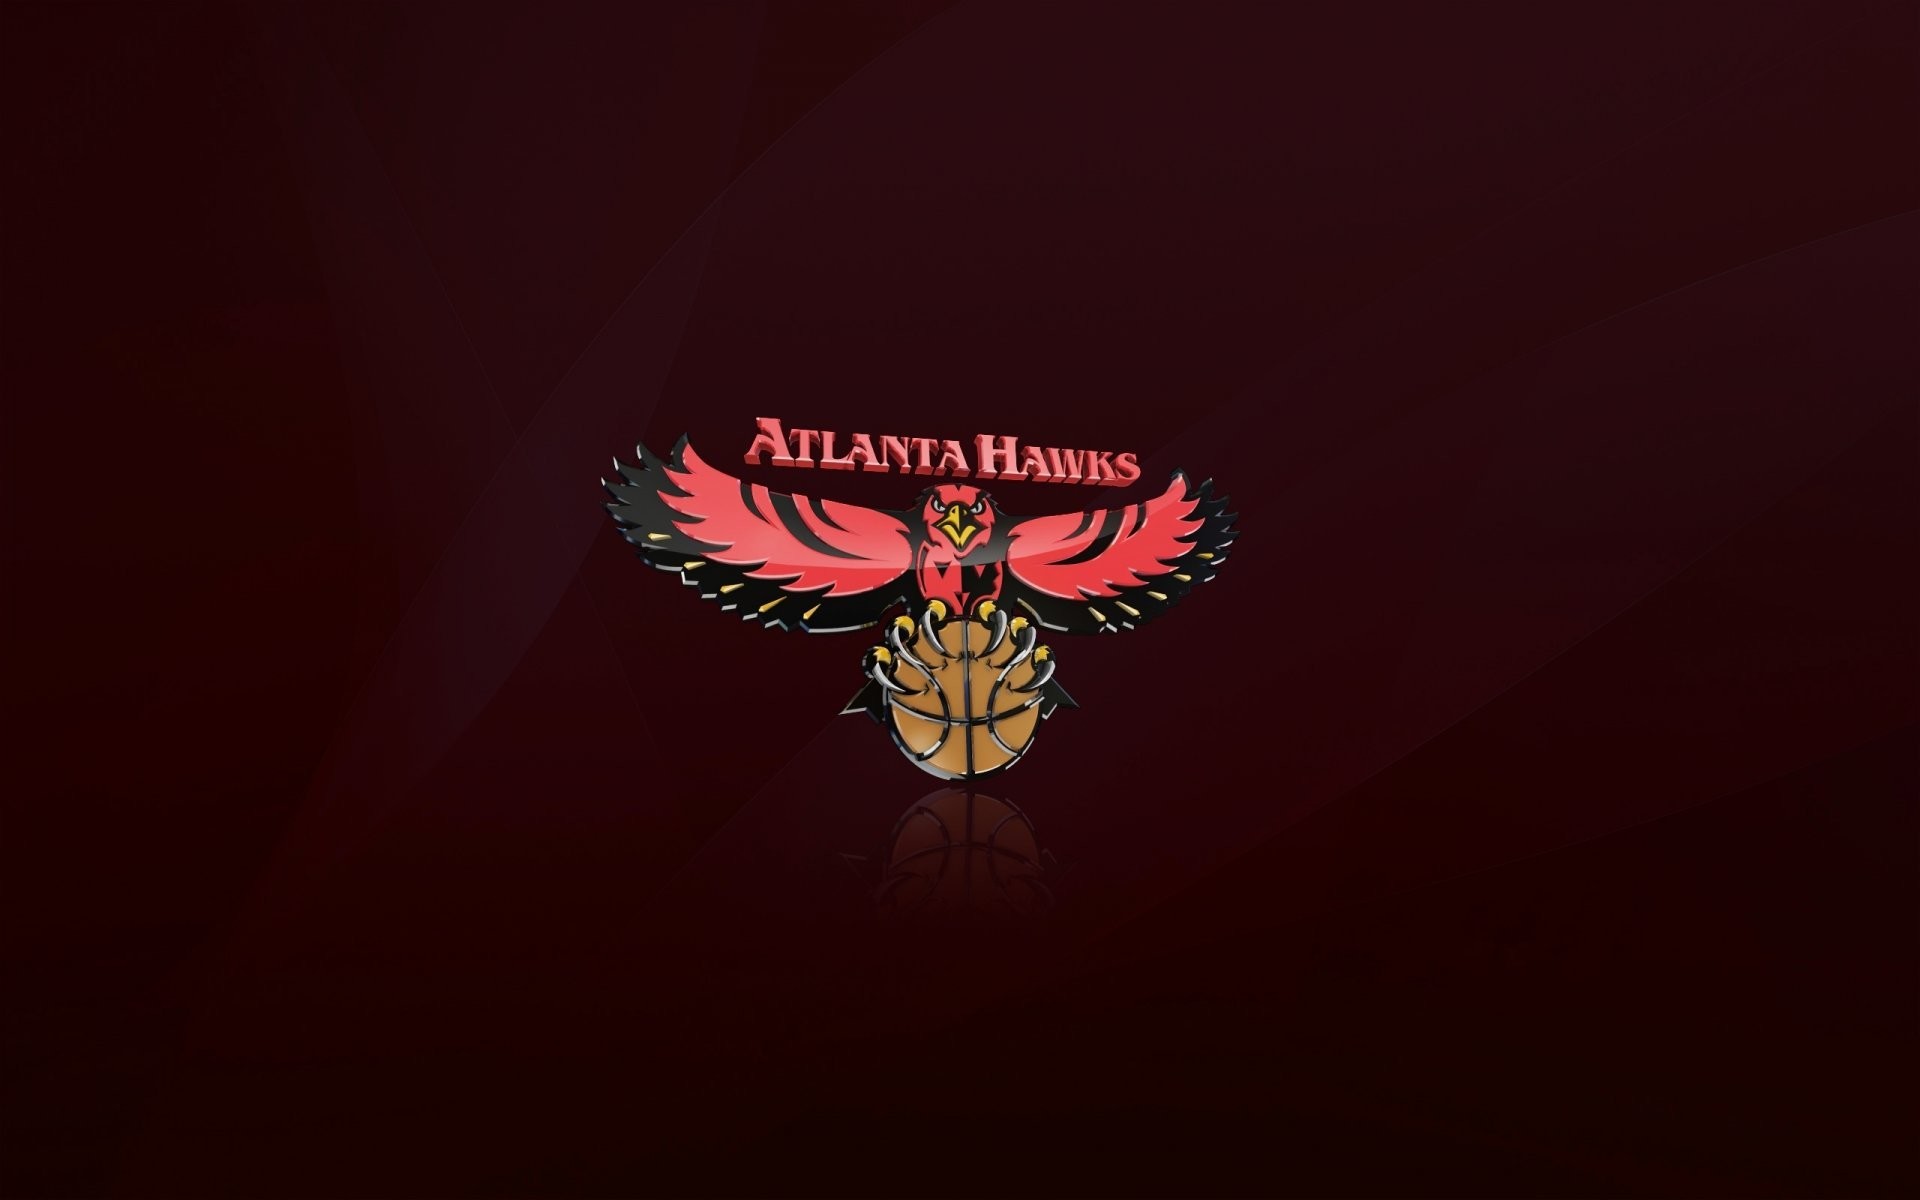 T-Mac Atlanta Hawks 2012 2560×1600 Wallpaper